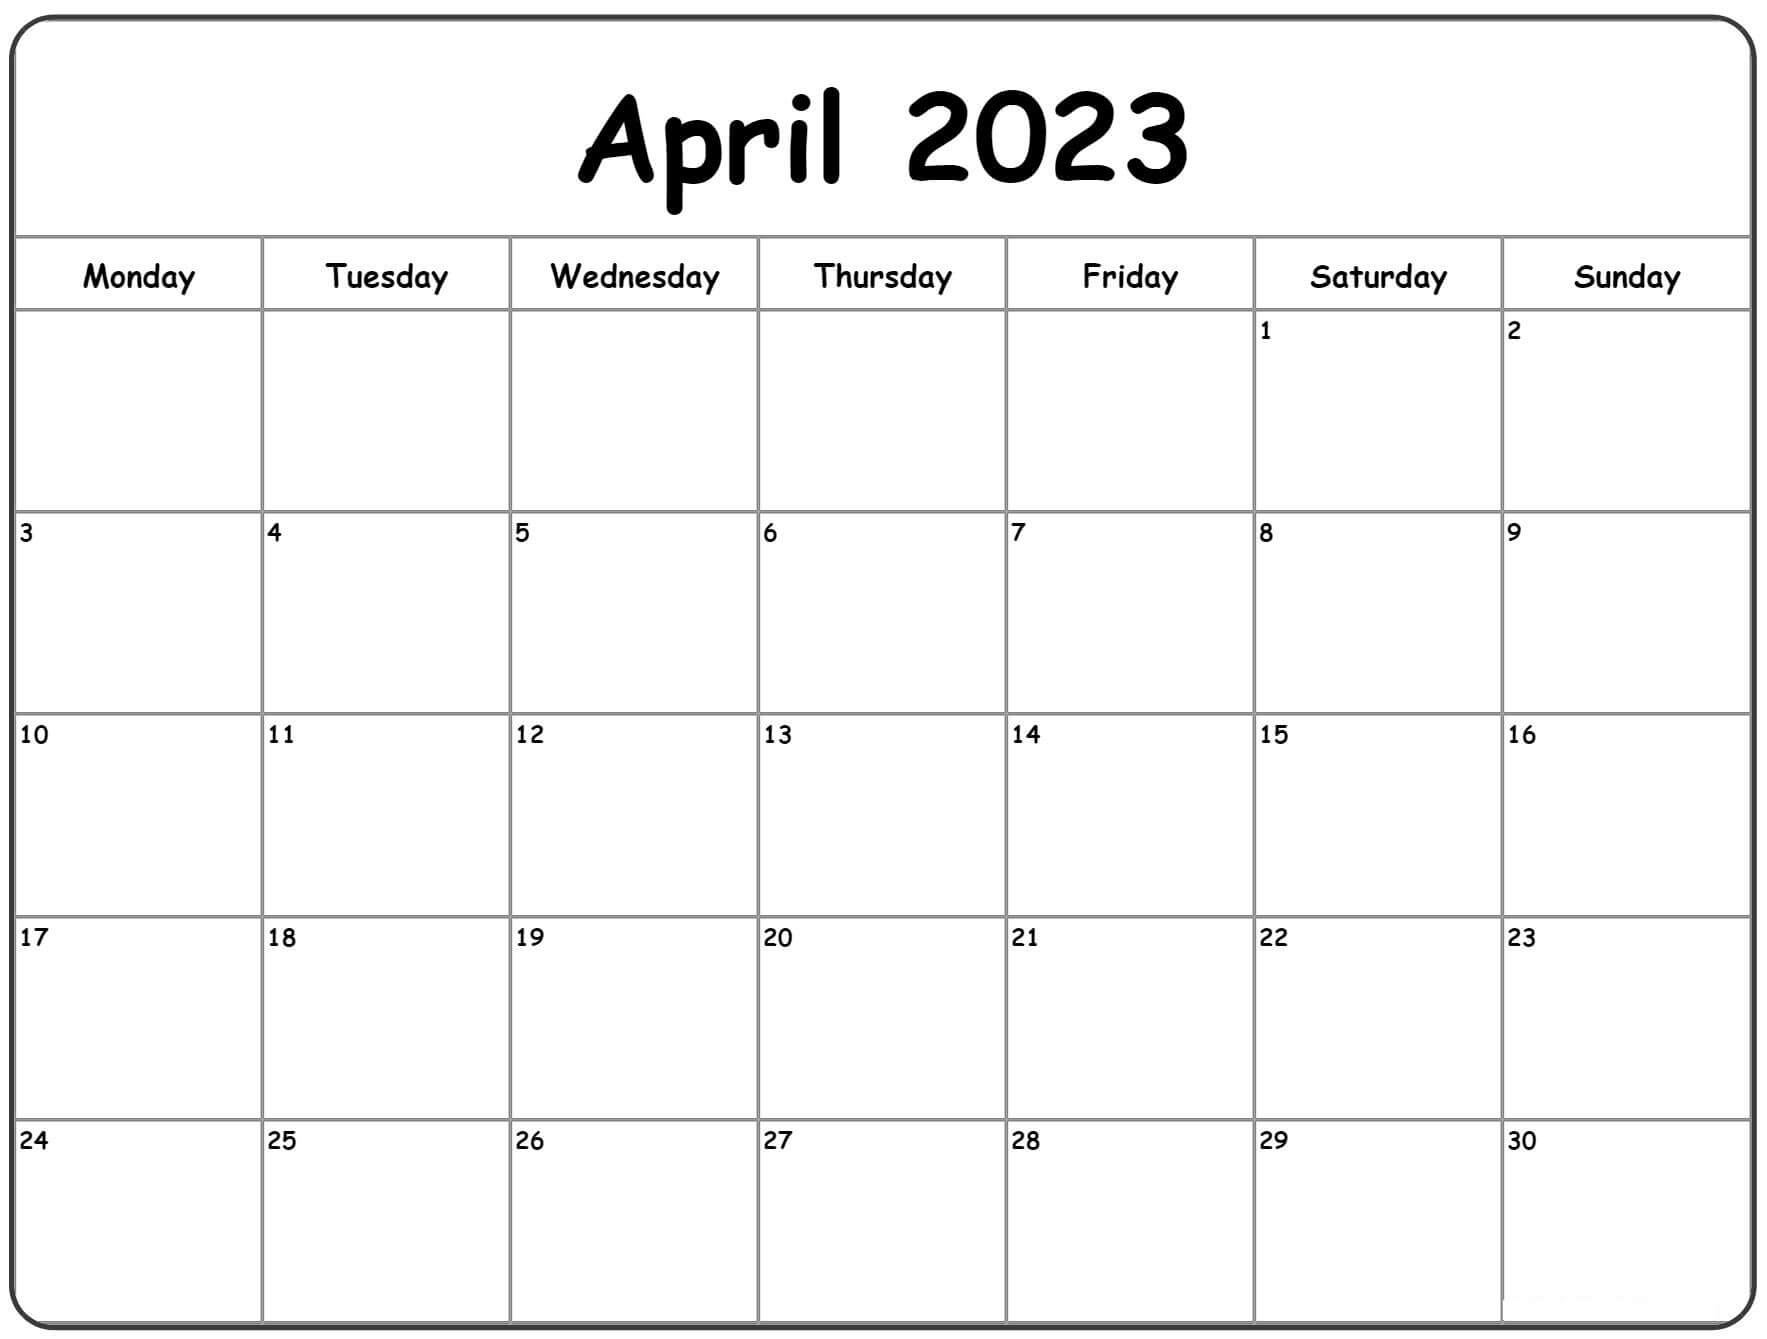 April 2023 calendar monday start